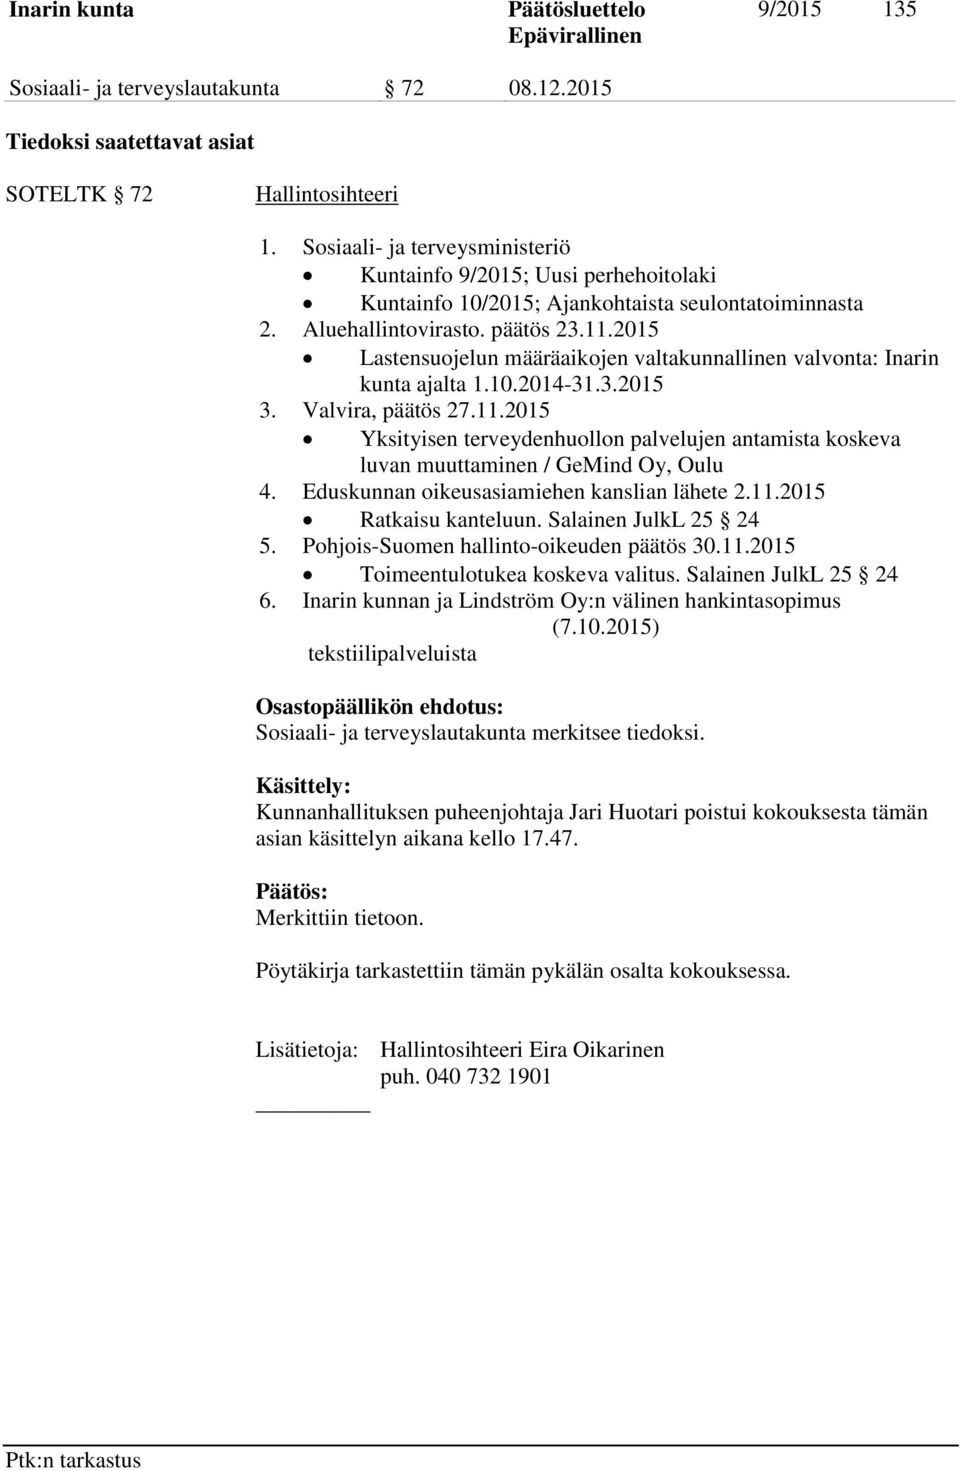 2015 Lastensuojelun määräaikojen valtakunnallinen valvonta: Inarin kunta ajalta 1.10.2014-31.3.2015 3. Valvira, päätös 27.11.